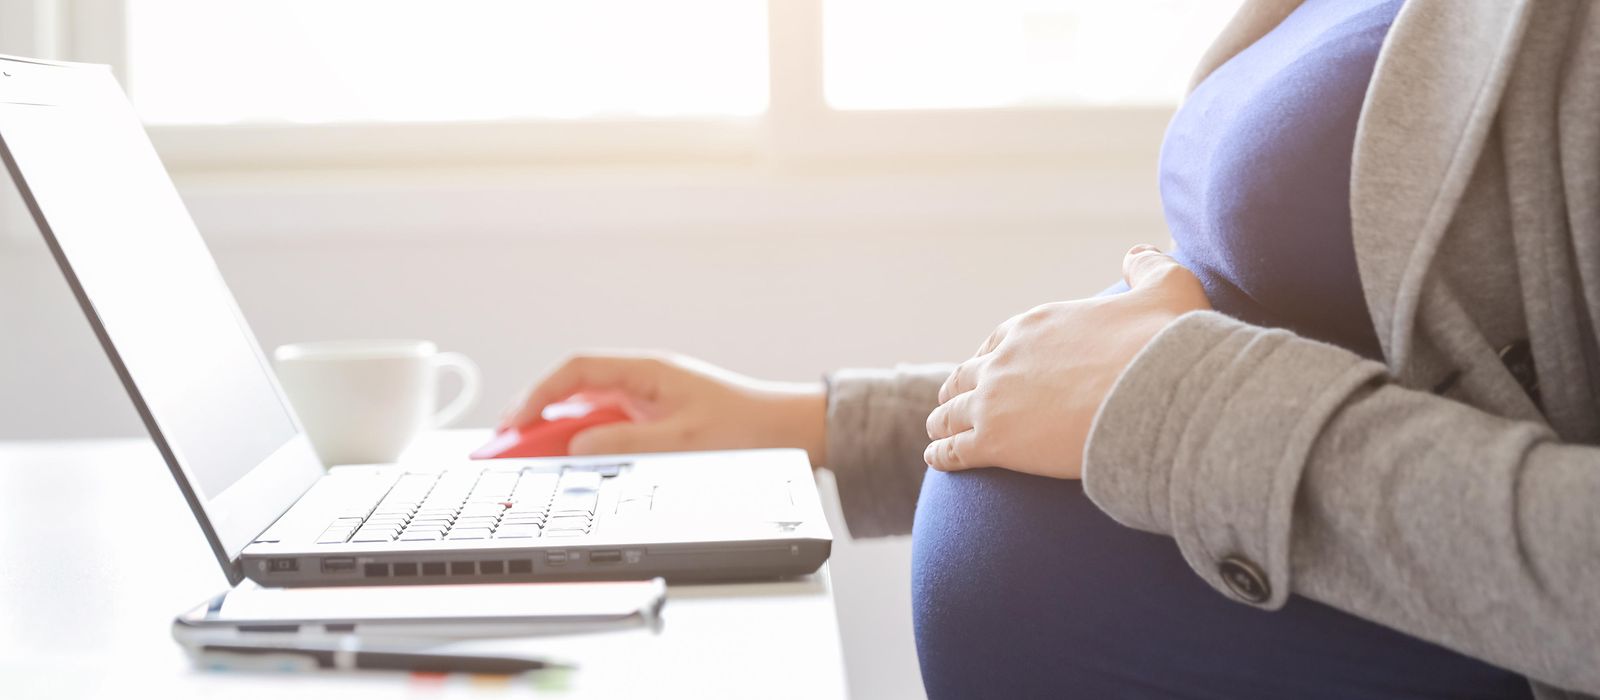 Bild zeigt: EIne schwangere Frau sitzt vor einem Laptop.